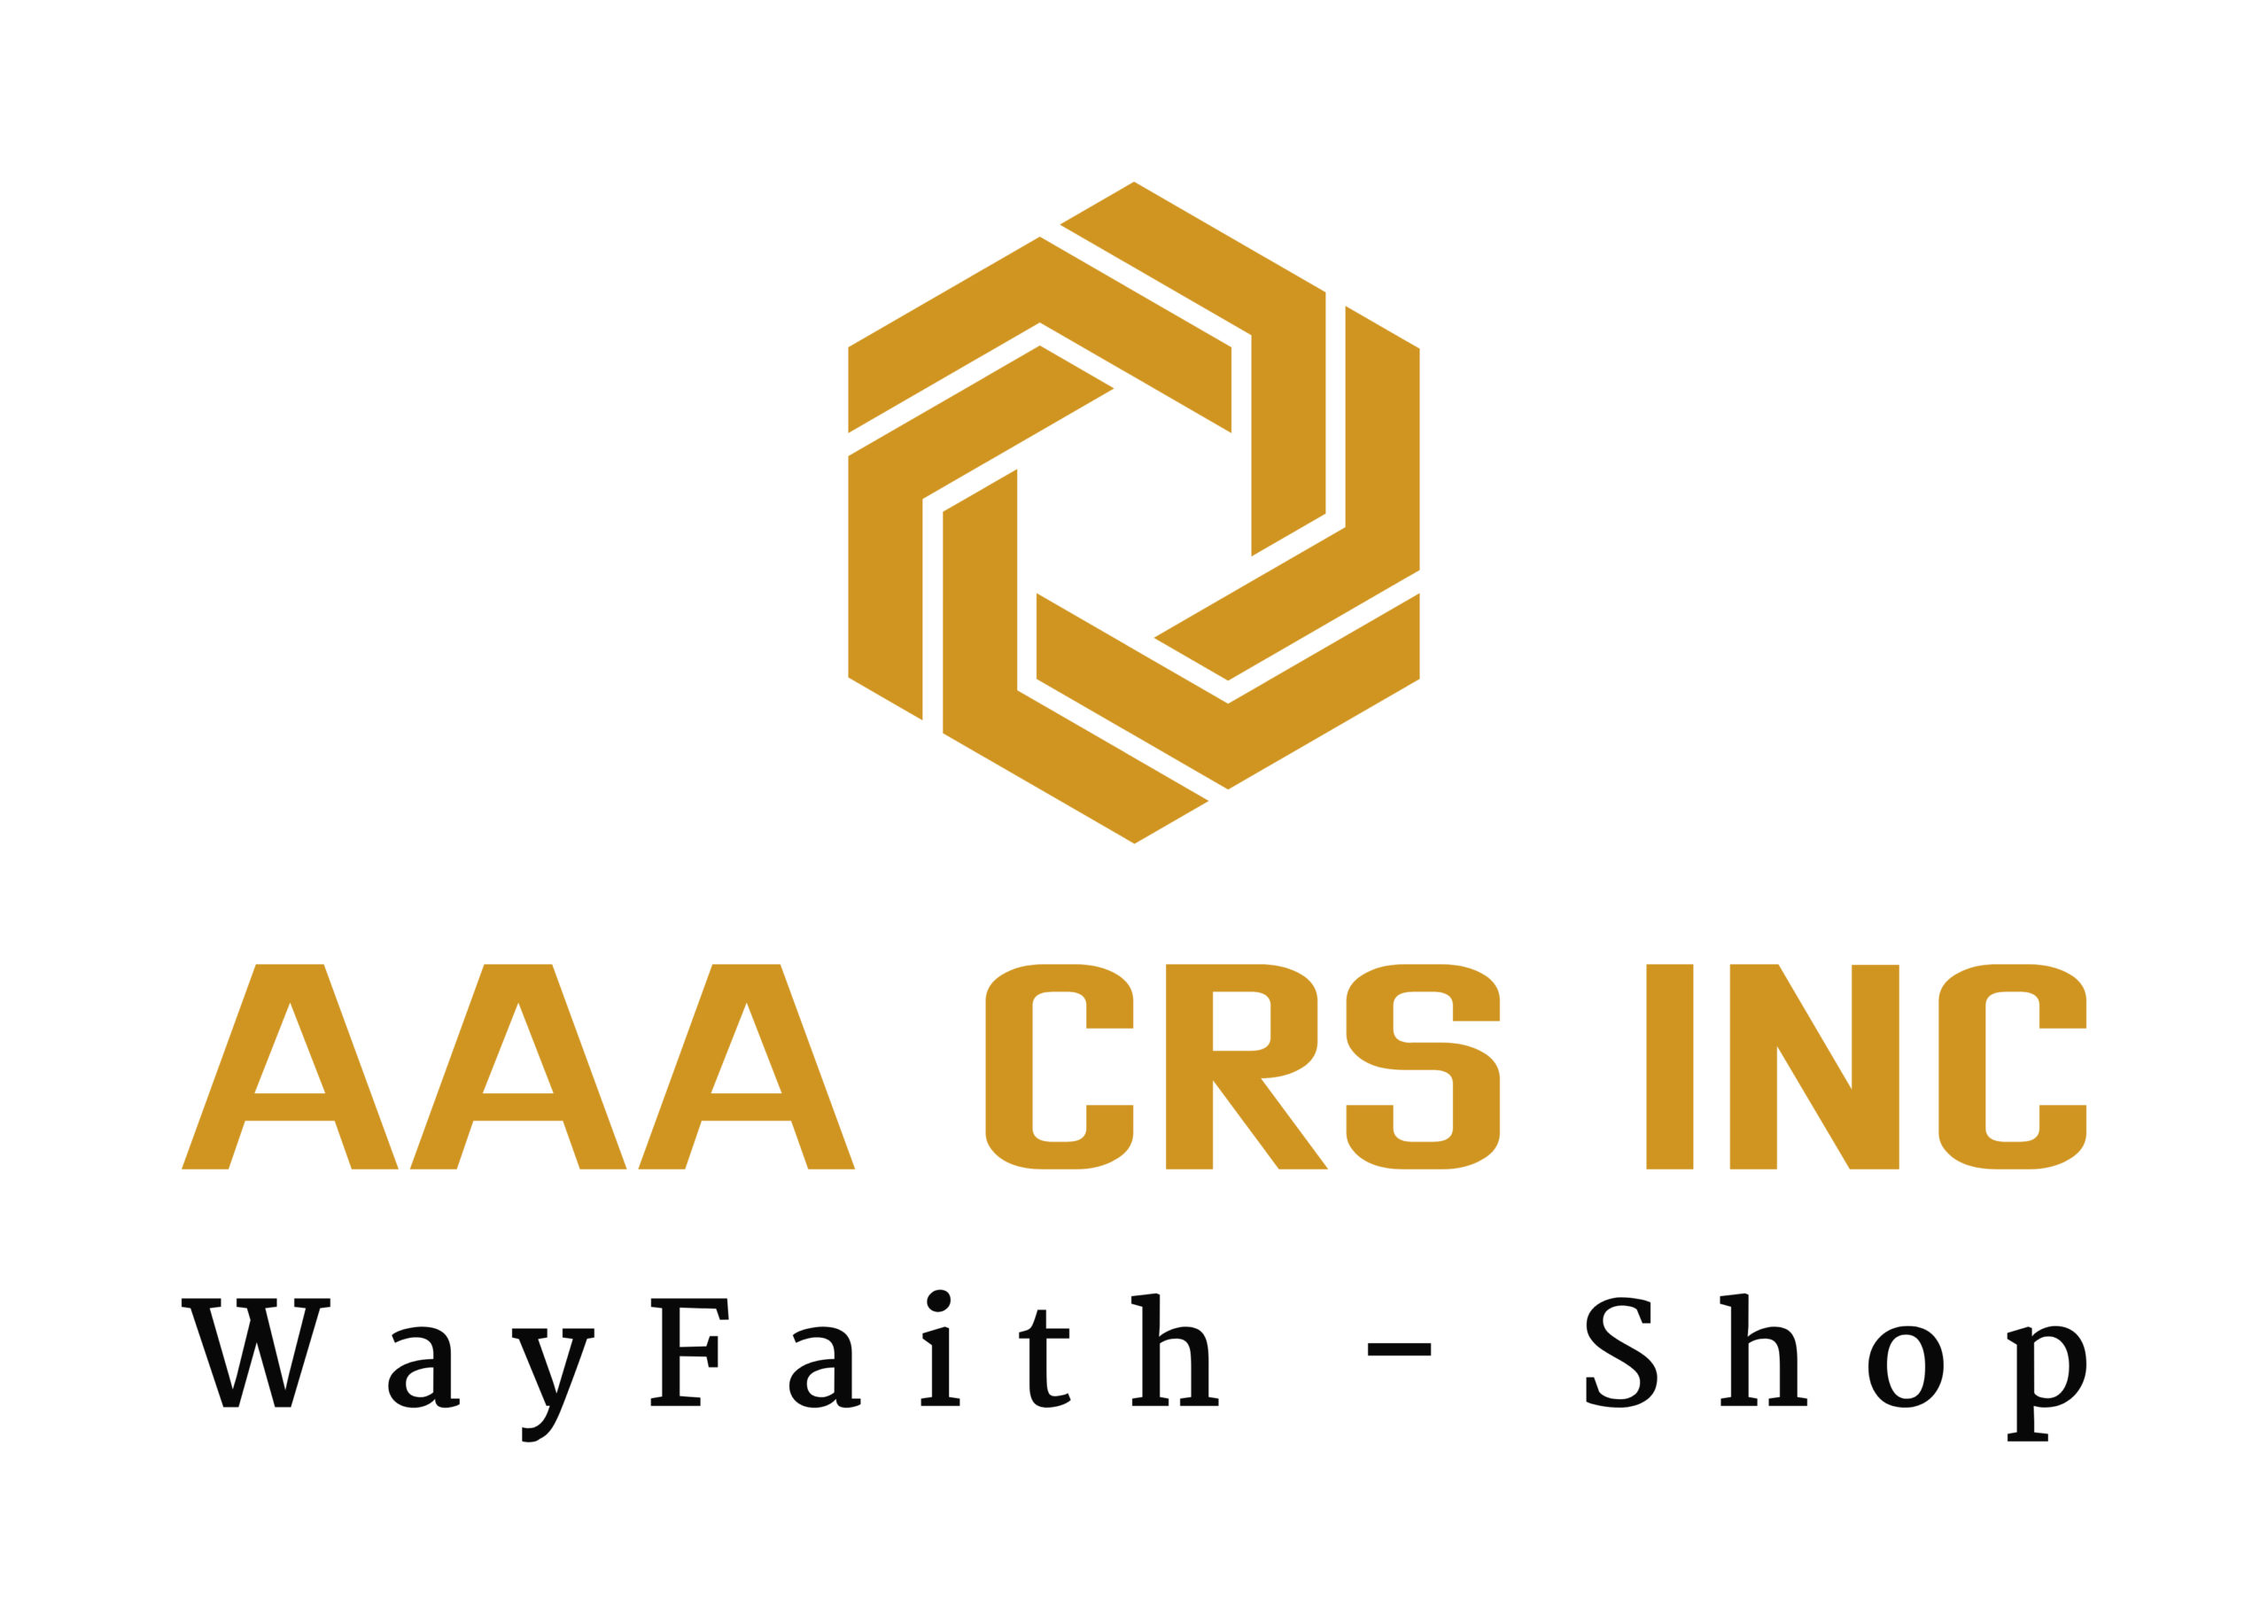 AAA CRS INC, Wayfaith.com - Shop